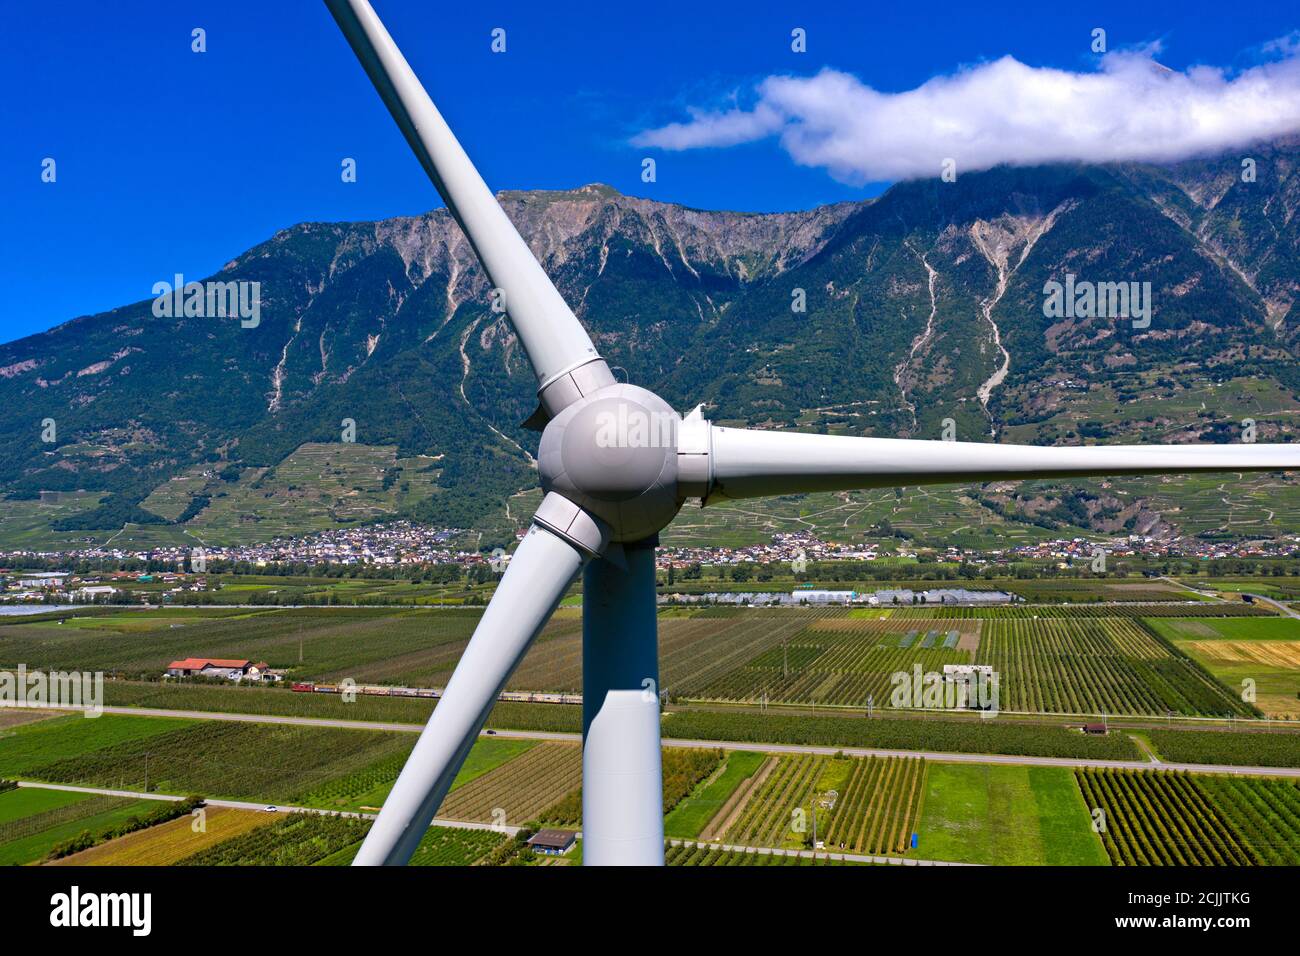 Centrale eolica di Adonis nella Valle del Rodano, la più grande turbina eolica della Svizzera, Charrat, Vallese, Svizzera Foto Stock